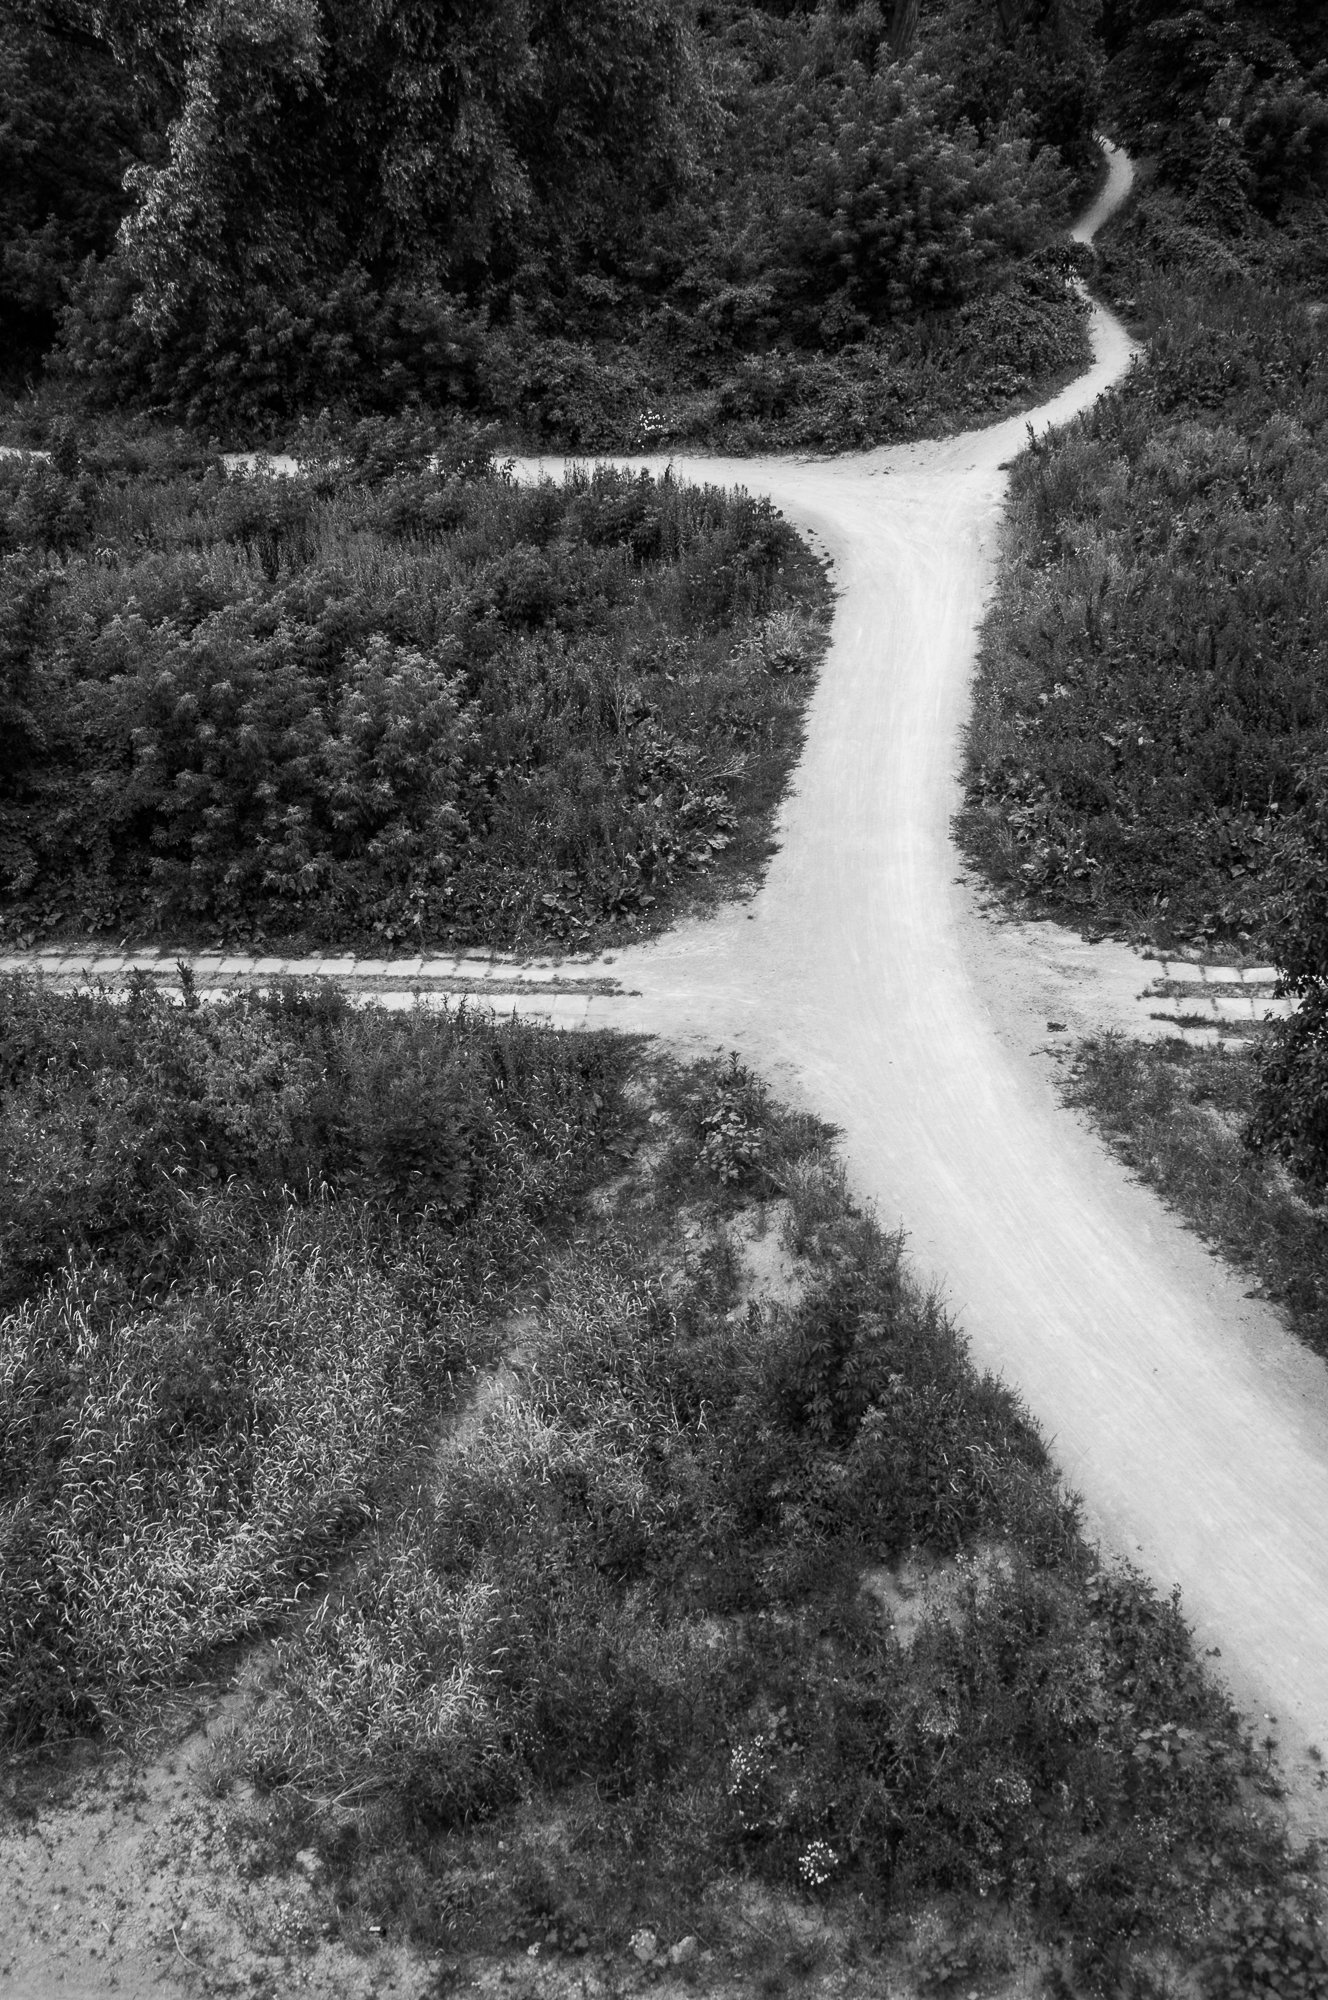 Adam Mazek Photography Warsaw (Warszawa) 2019. Post: "Shortcuts." Minimalism. It's my way. Path. Crossroads.